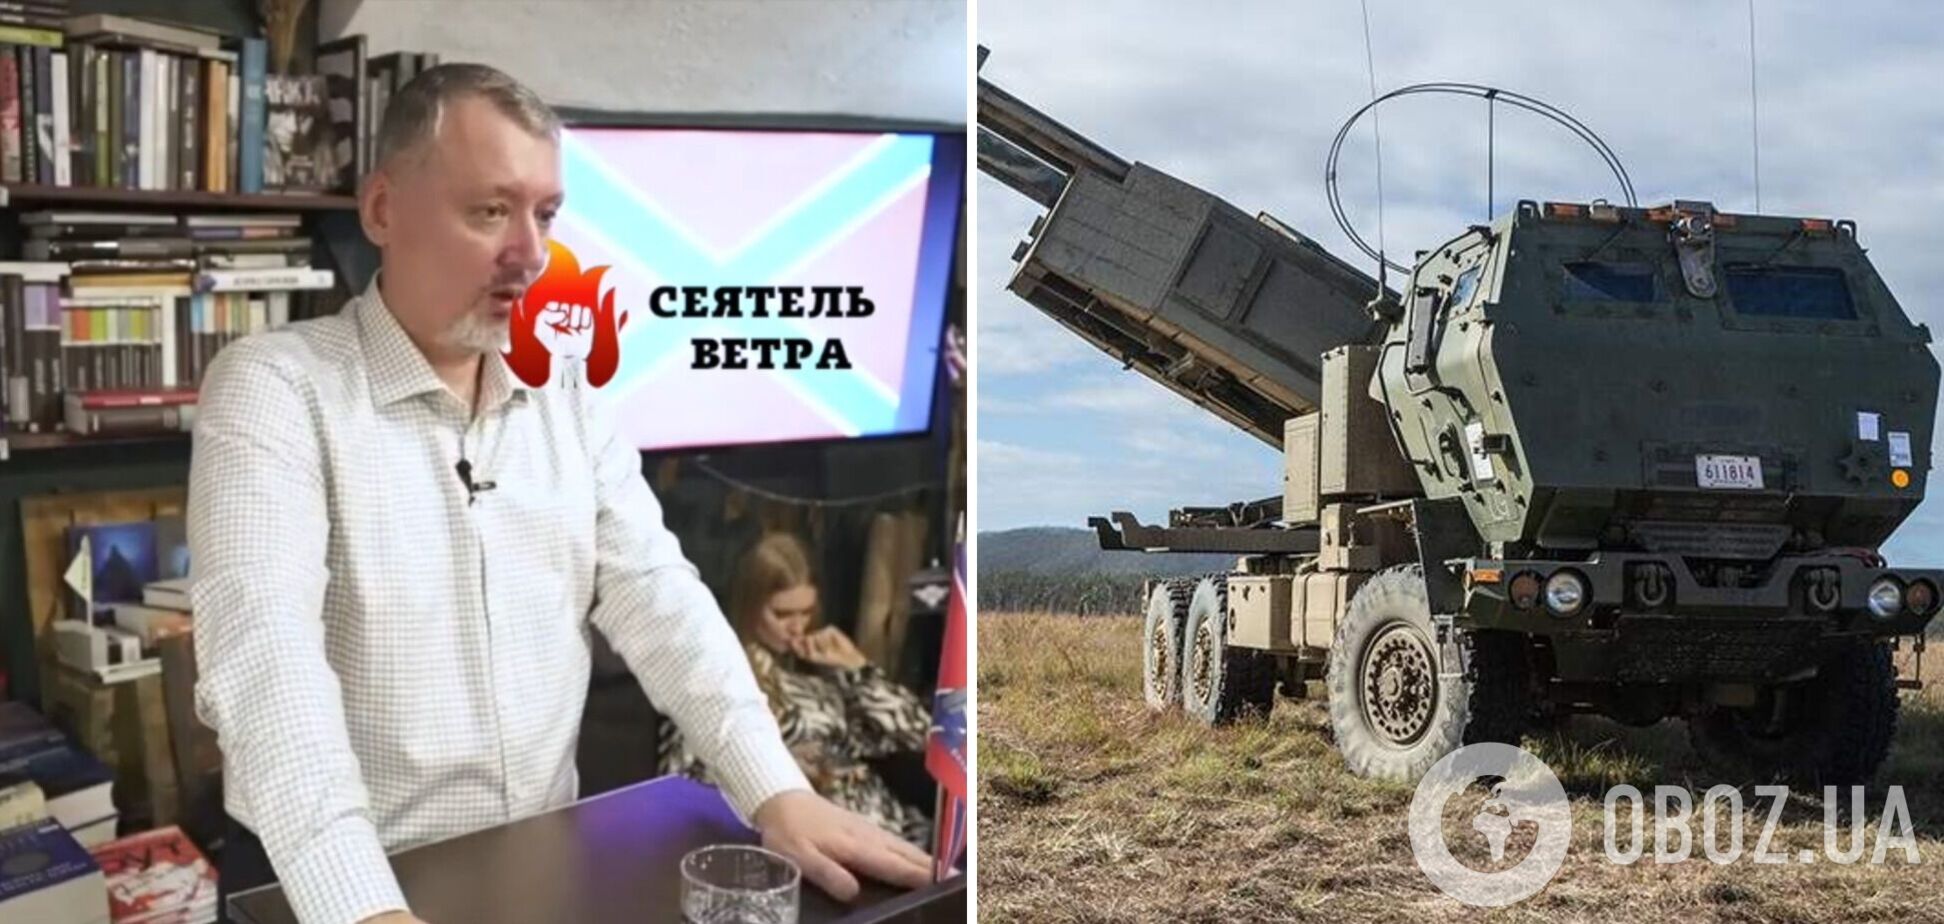 'Мы не можем попасть в точку': террорист Гиркин пожаловался на проблемы с российскими ракетами. Видео